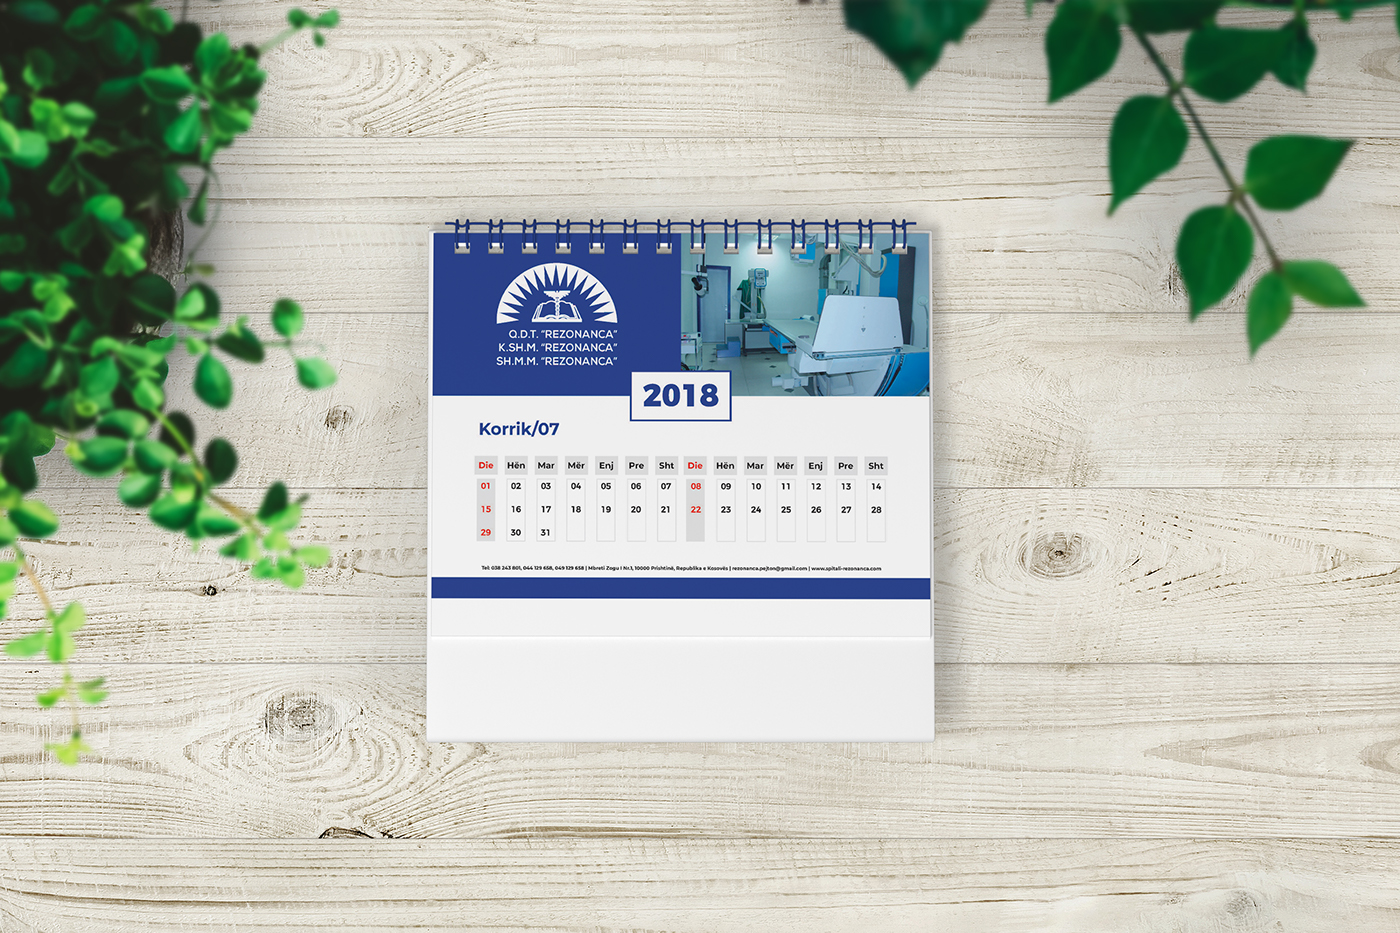 rezonanca desk calendar 2018 design print high Quality